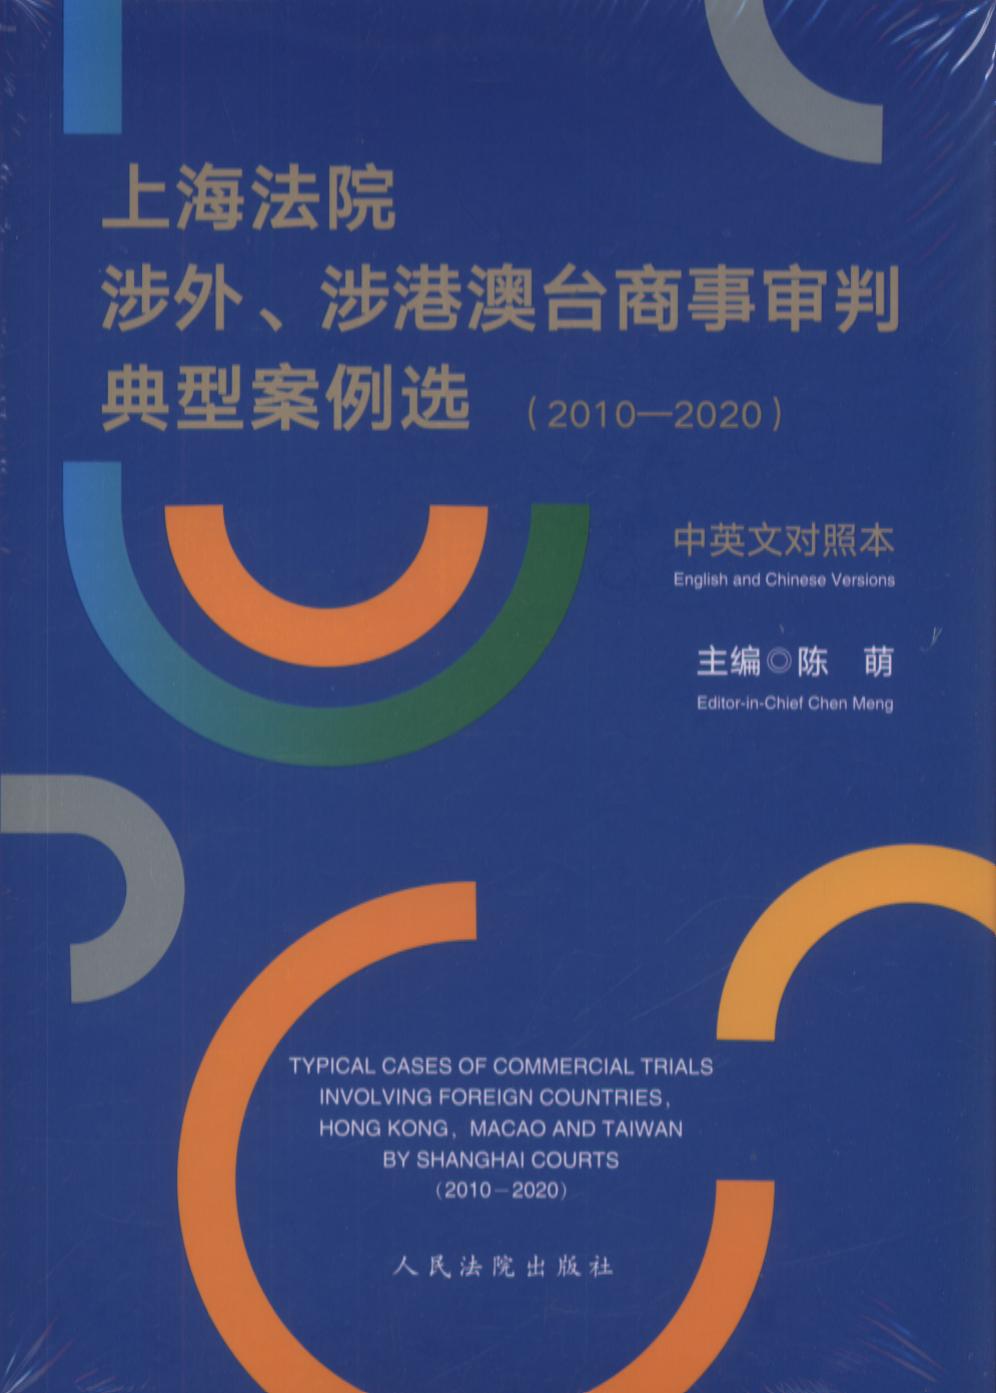 上海法院涉外、涉港澳台商事审判典型案例选(2010-2020)中英文本